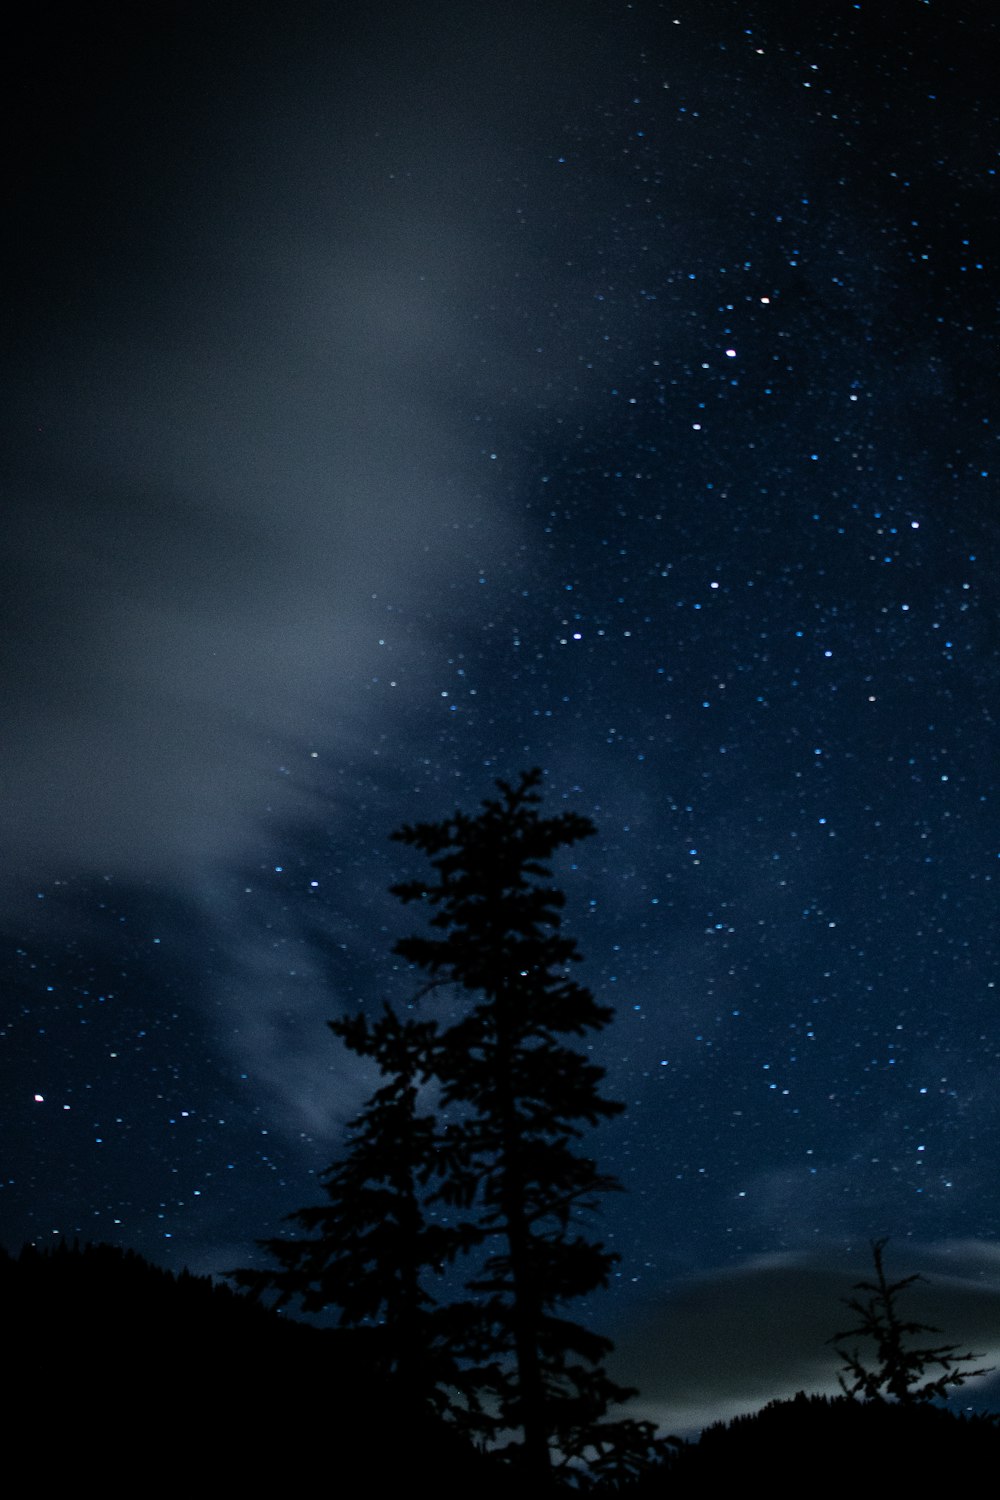 Un árbol con estrellas en el cielo